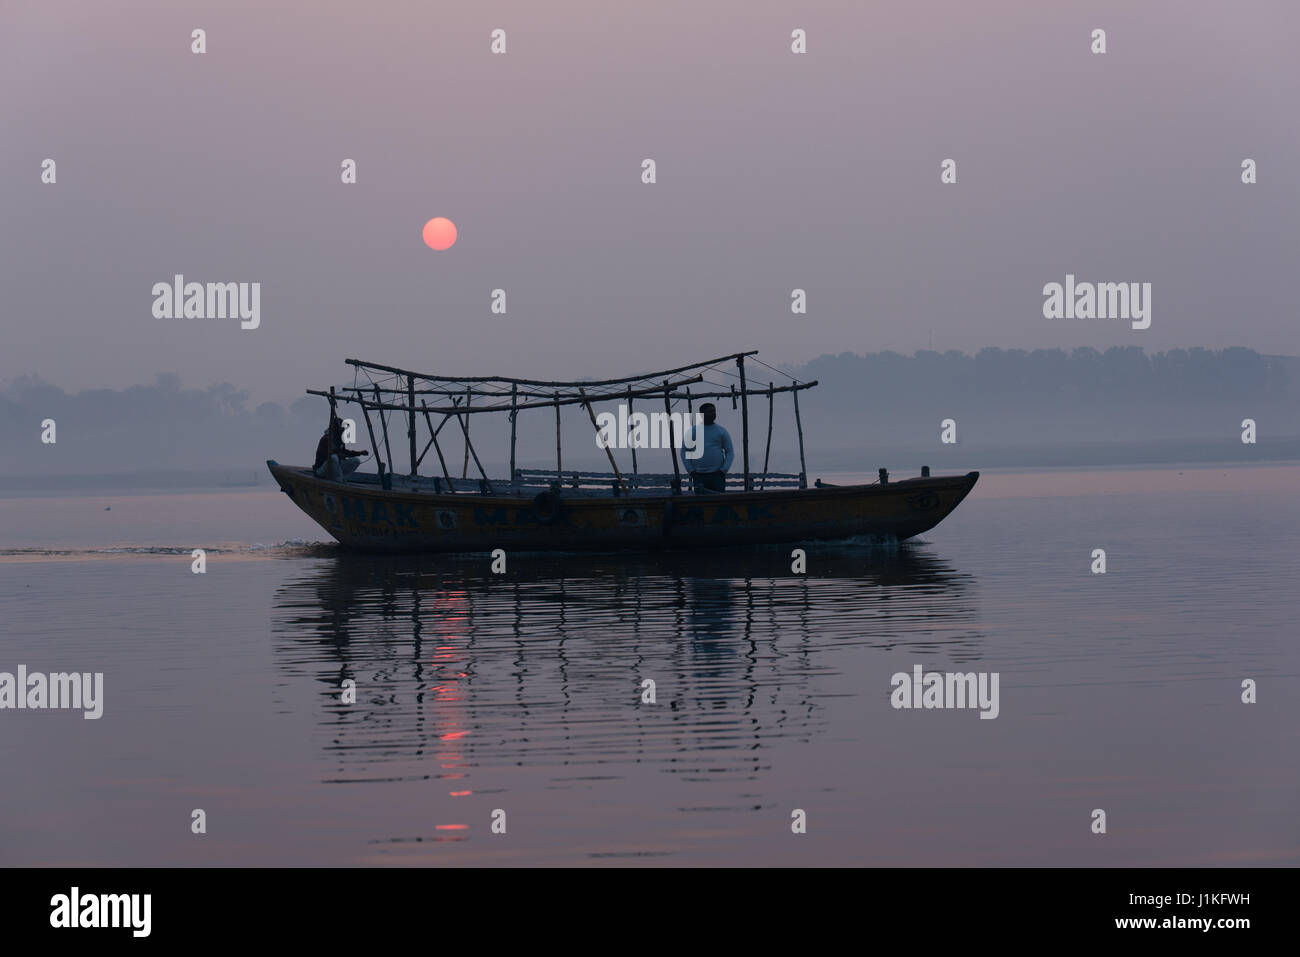 Early morning boat ride in Varanasi, India Stock Photo